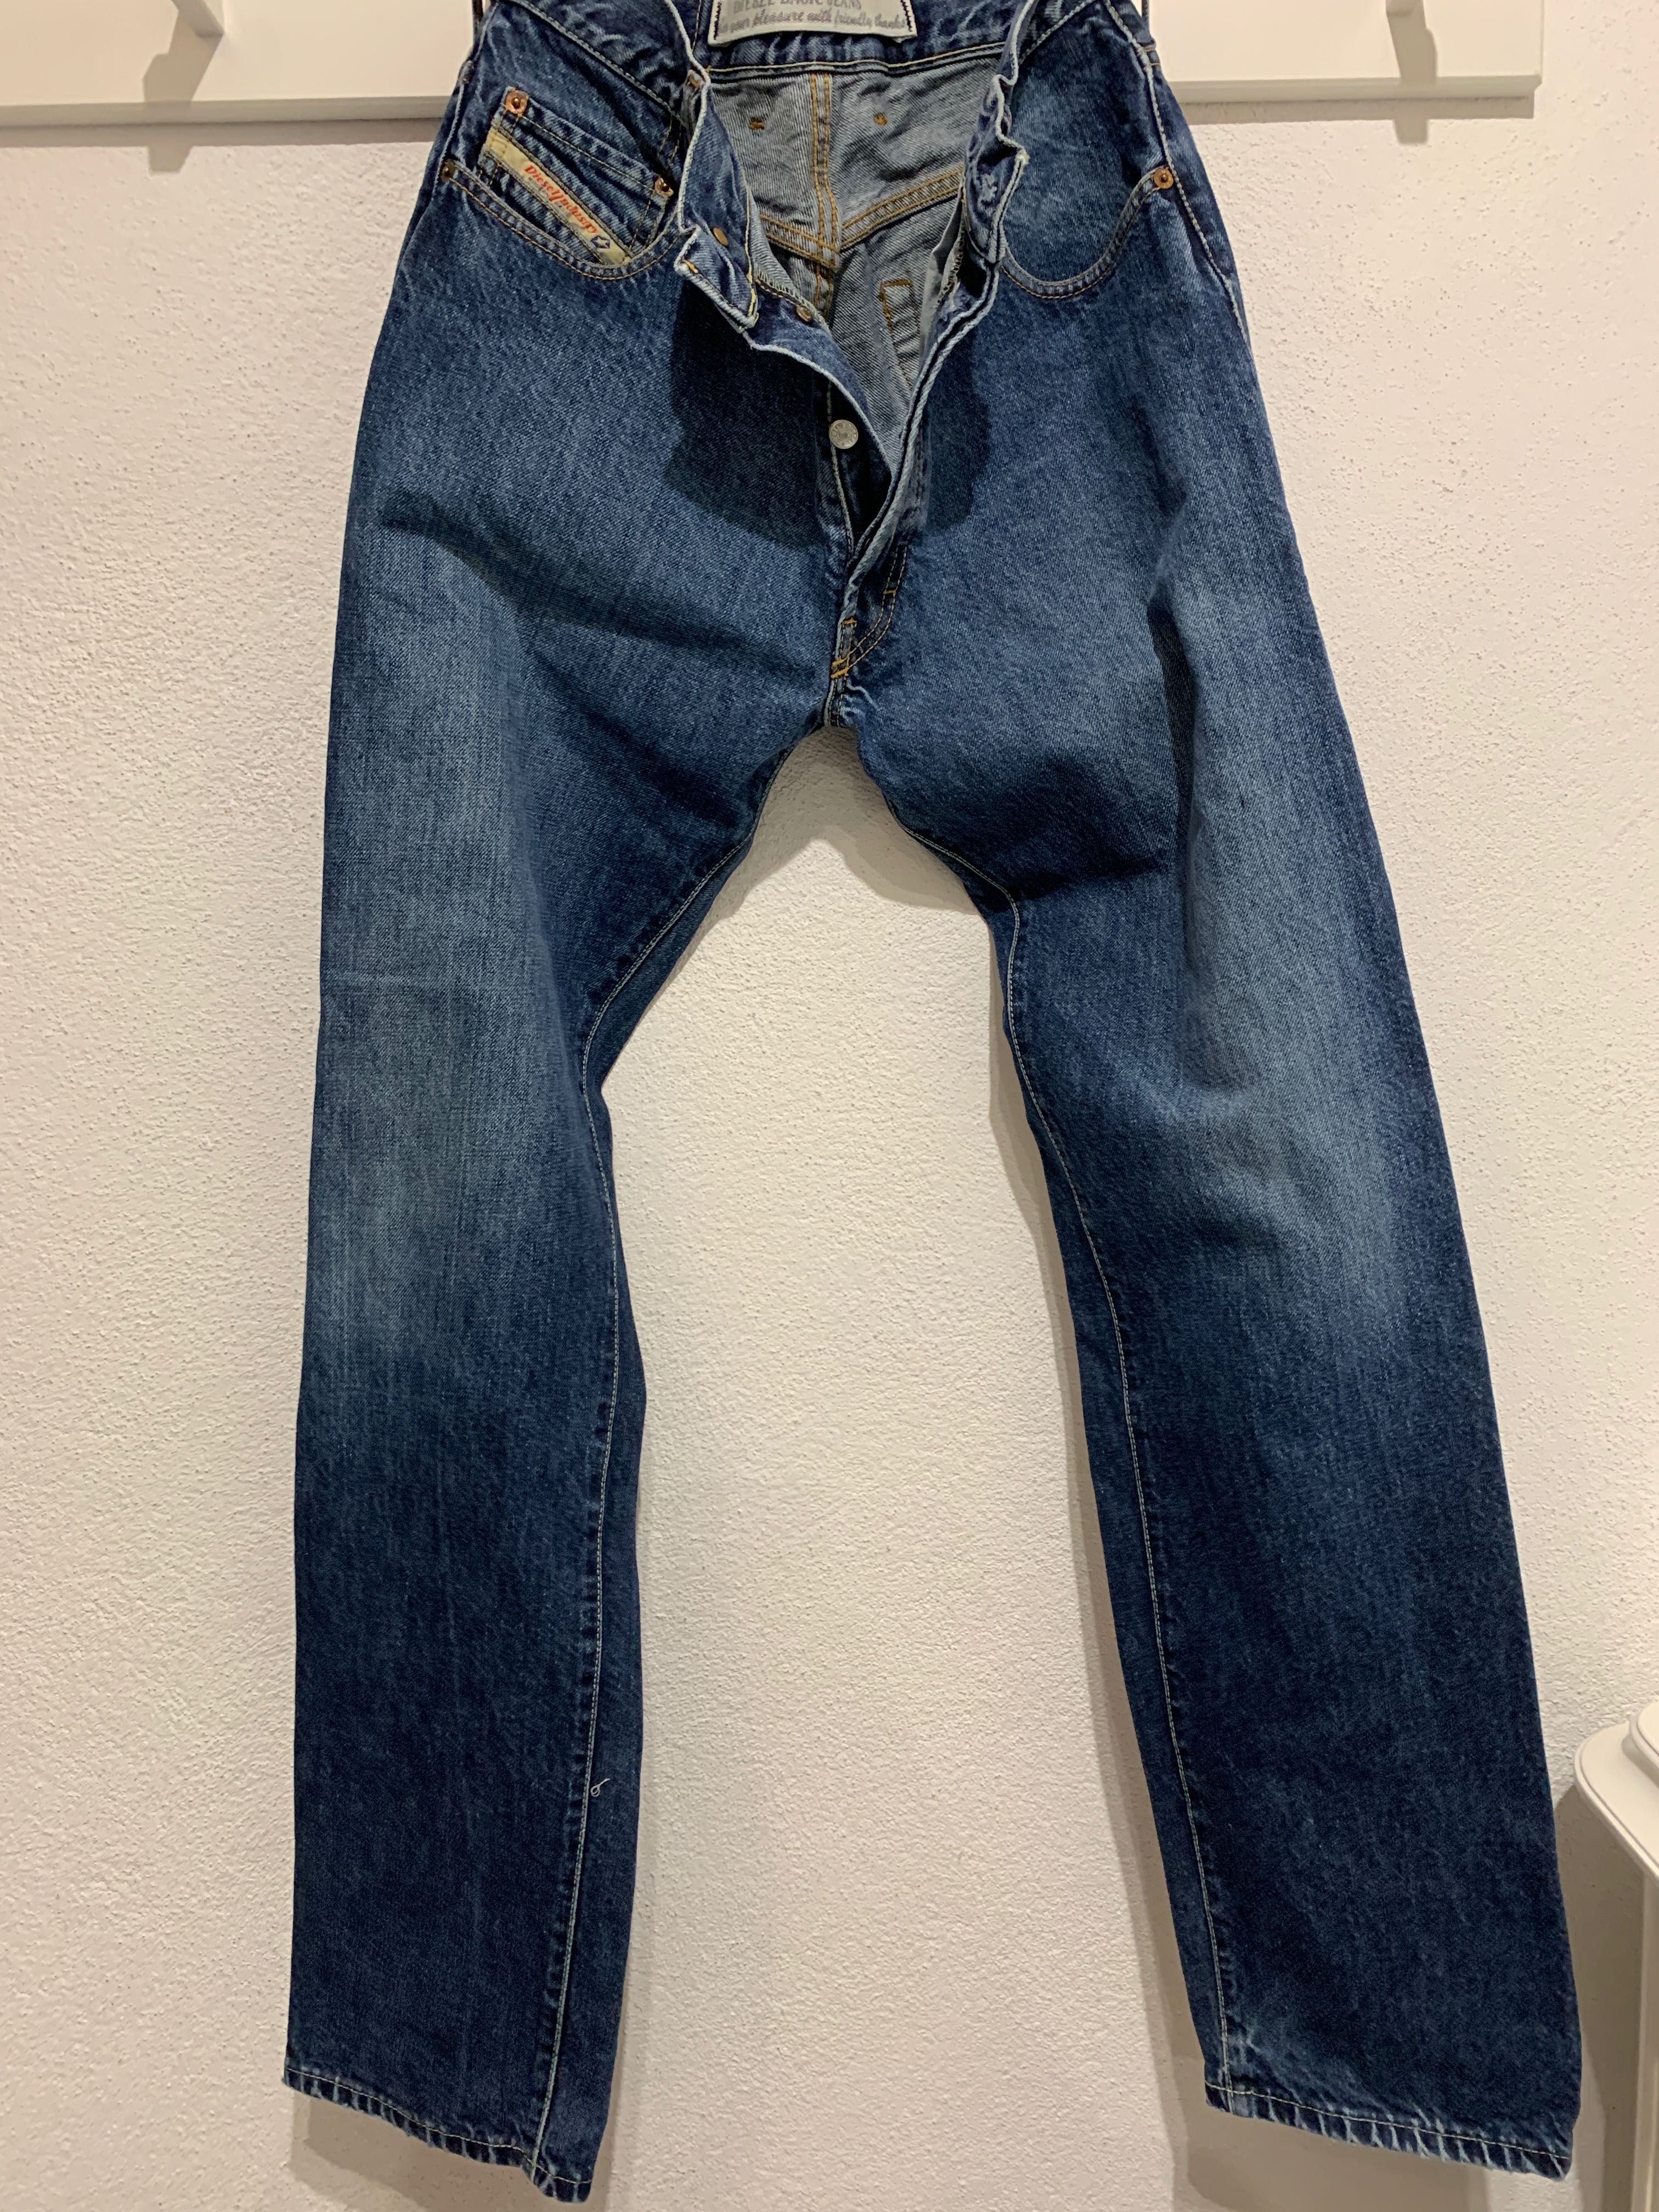 Diesel męskie jeansy/31x34-stan idealny